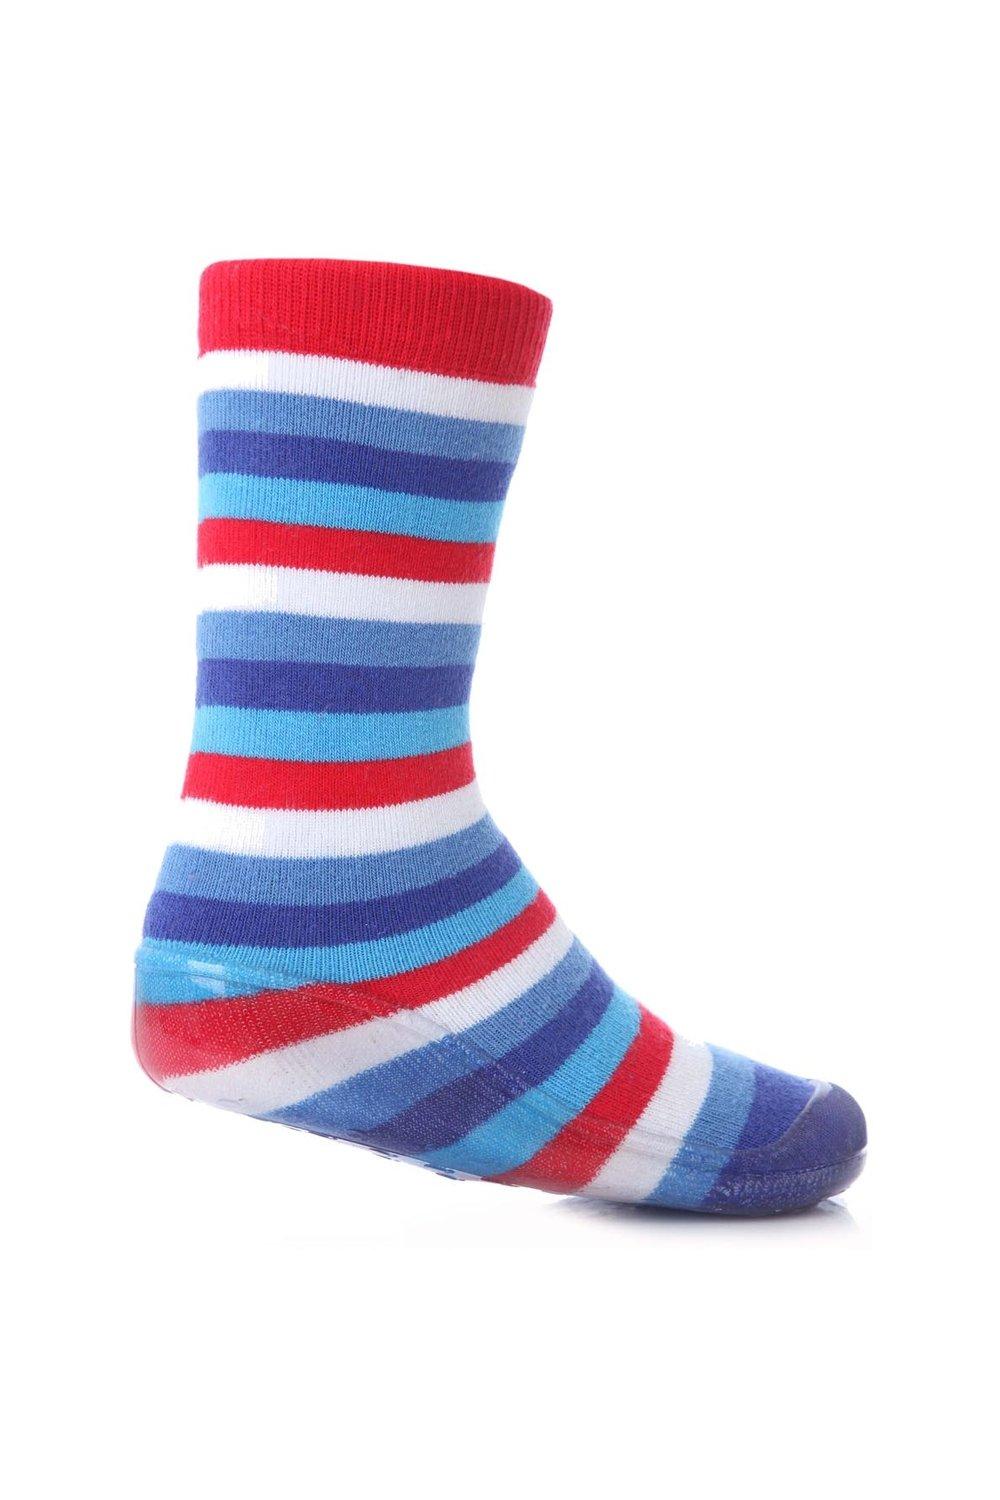 1 пара полосатых носков-тапочек Gripper со скидкой 25% на этот стиль SOCKSHOP, синий 1 пара полосатых носков тапочек gripper со скидкой 25% на этот стиль sockshop синий